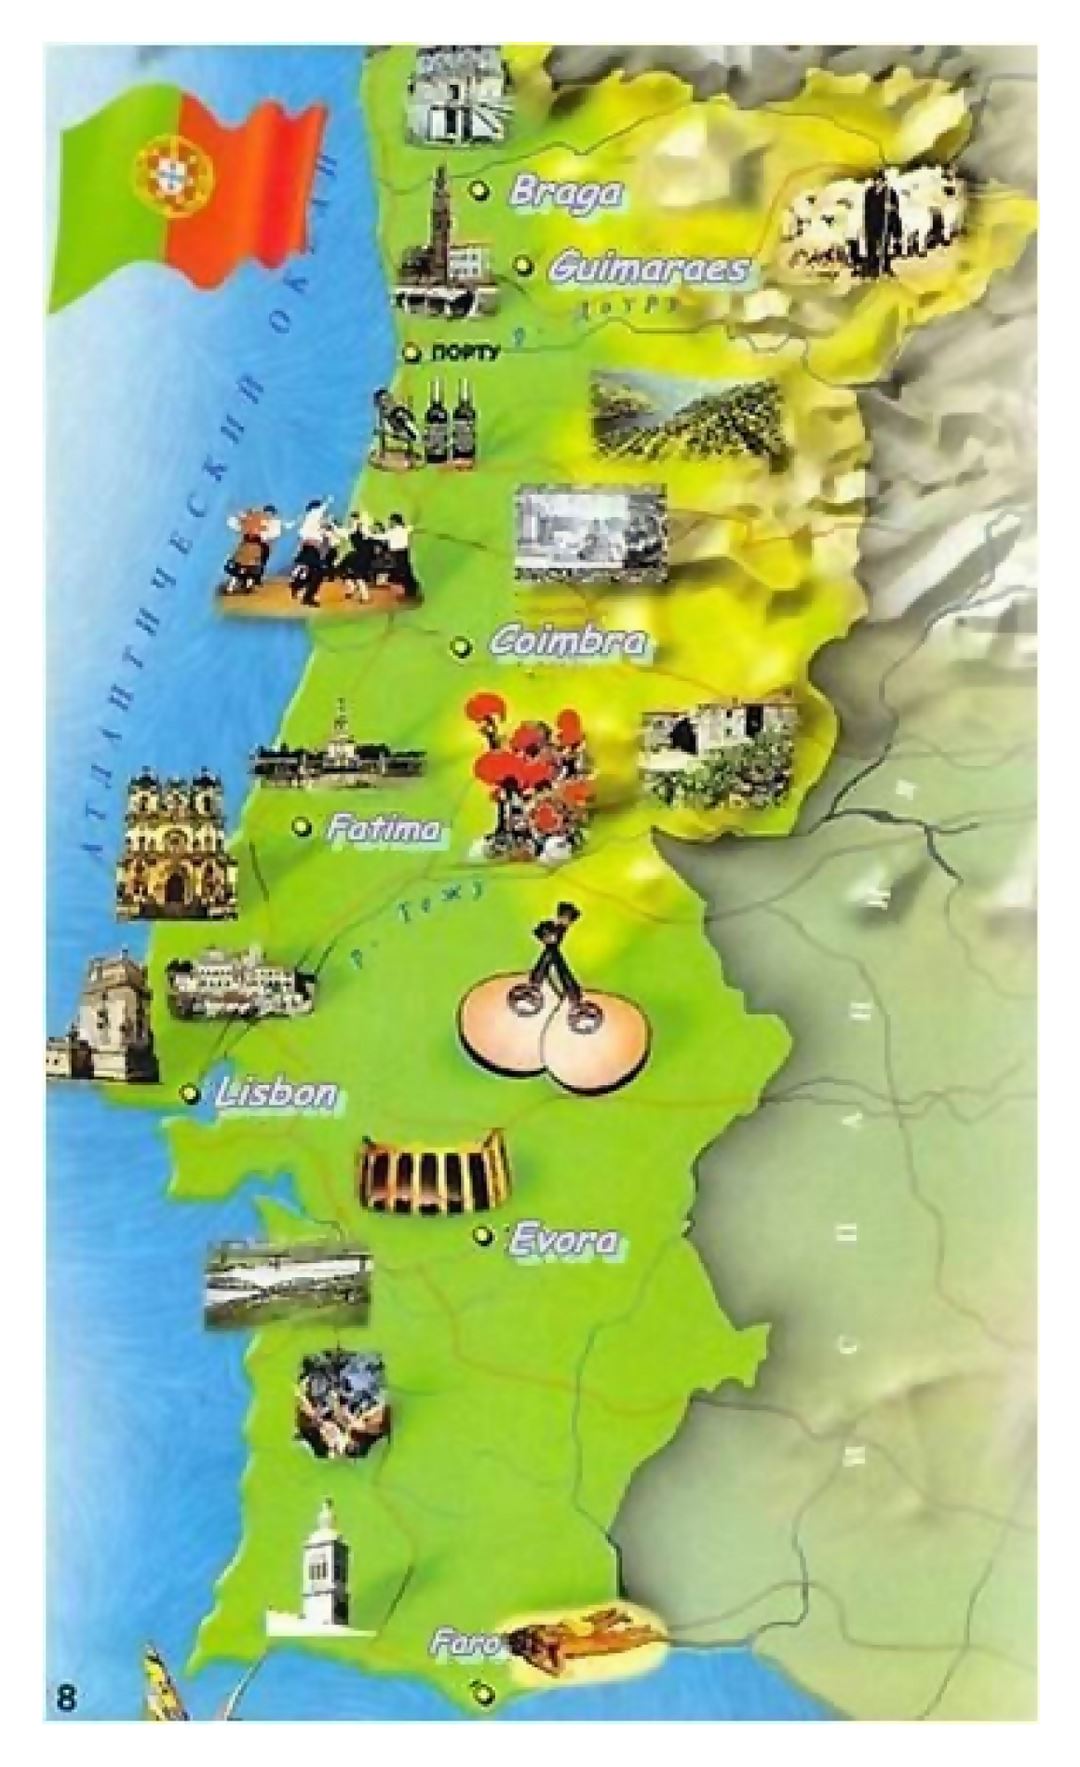 Grande viaje ilustra mapa de Portugal